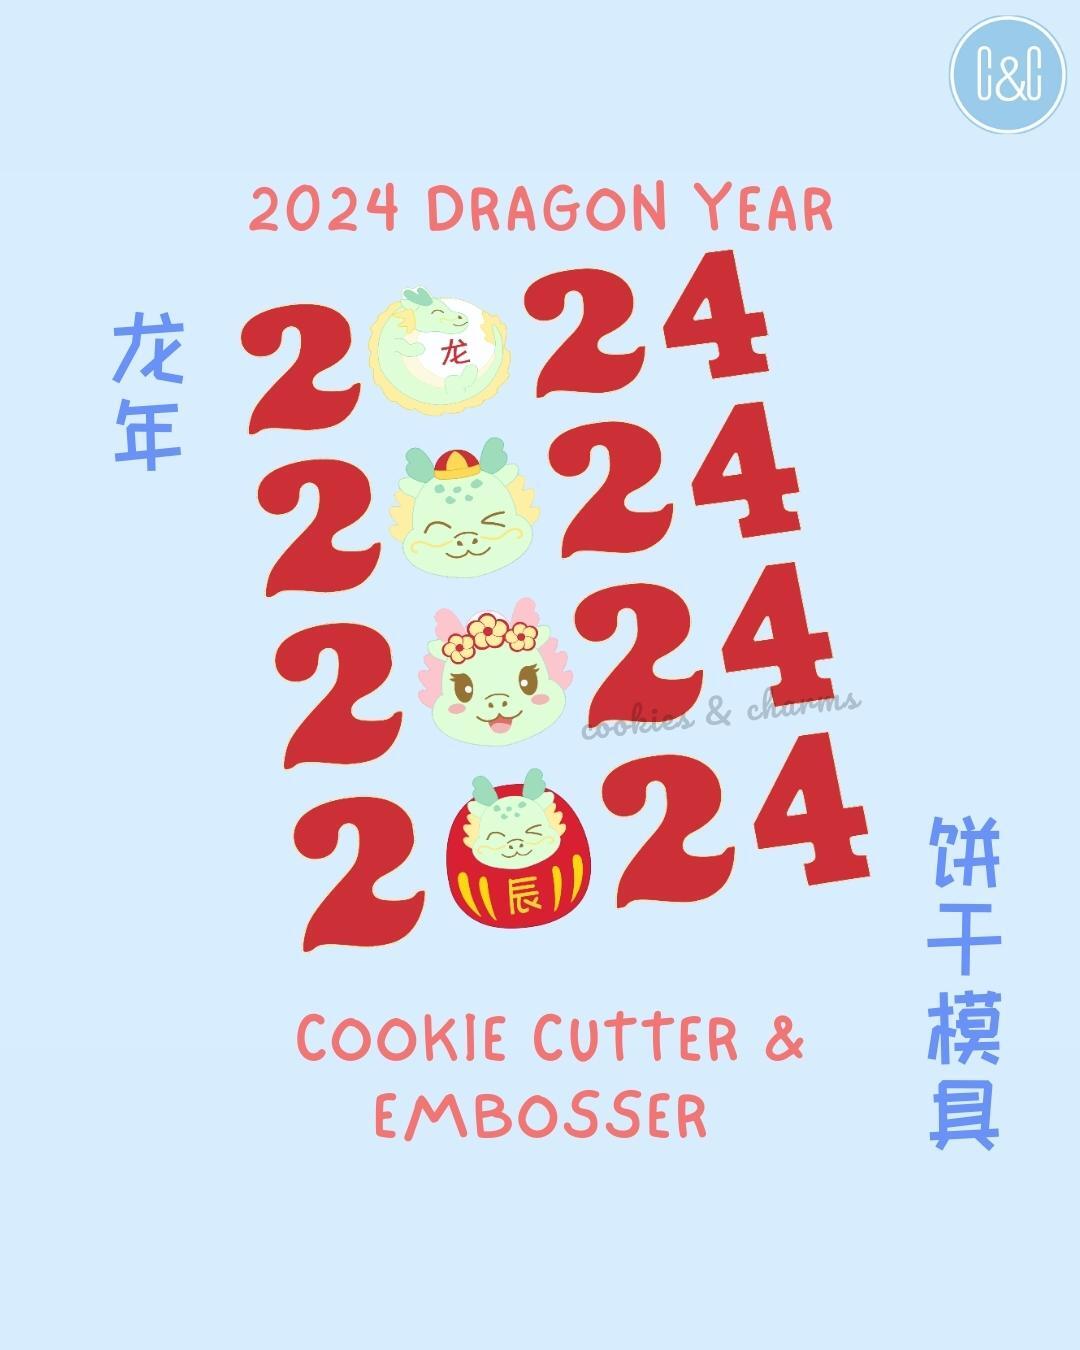 龙年快乐 2024 Year of the Dragon Cookie Cutter and Embosser